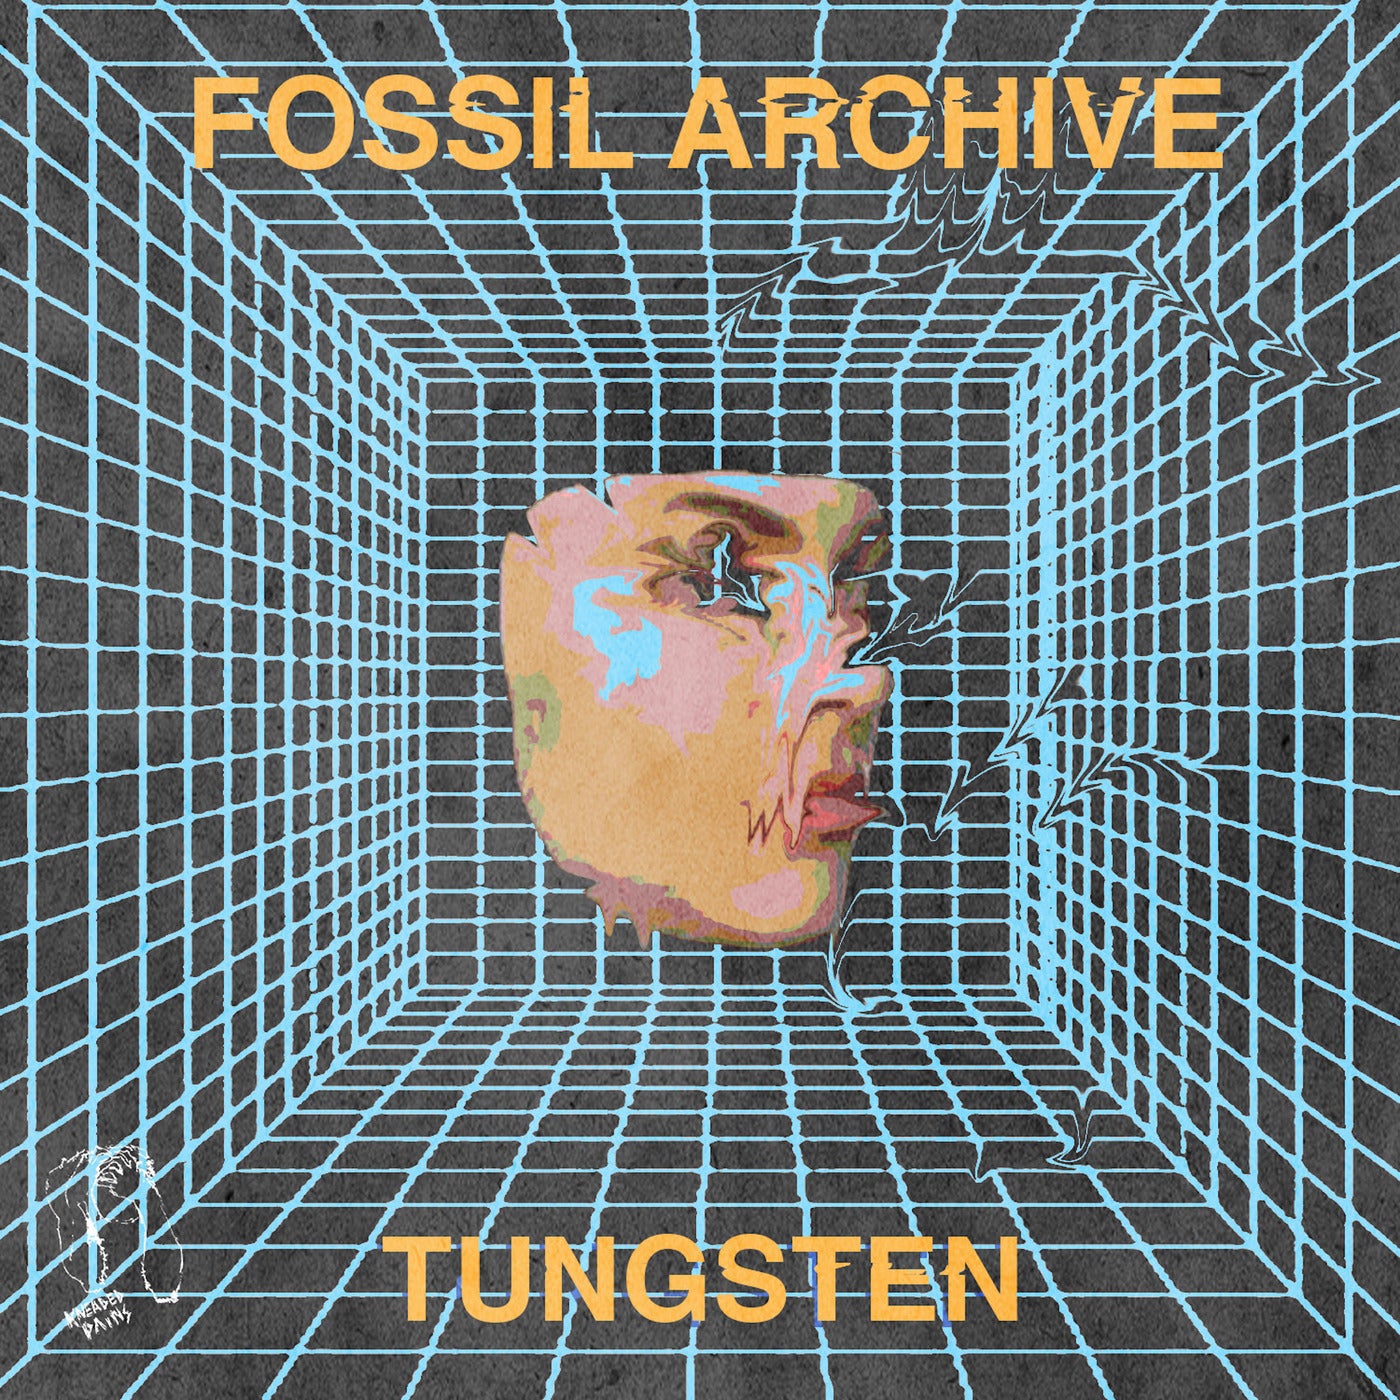 Roberto, Fossil Archive - Tungsten [KPLP10]